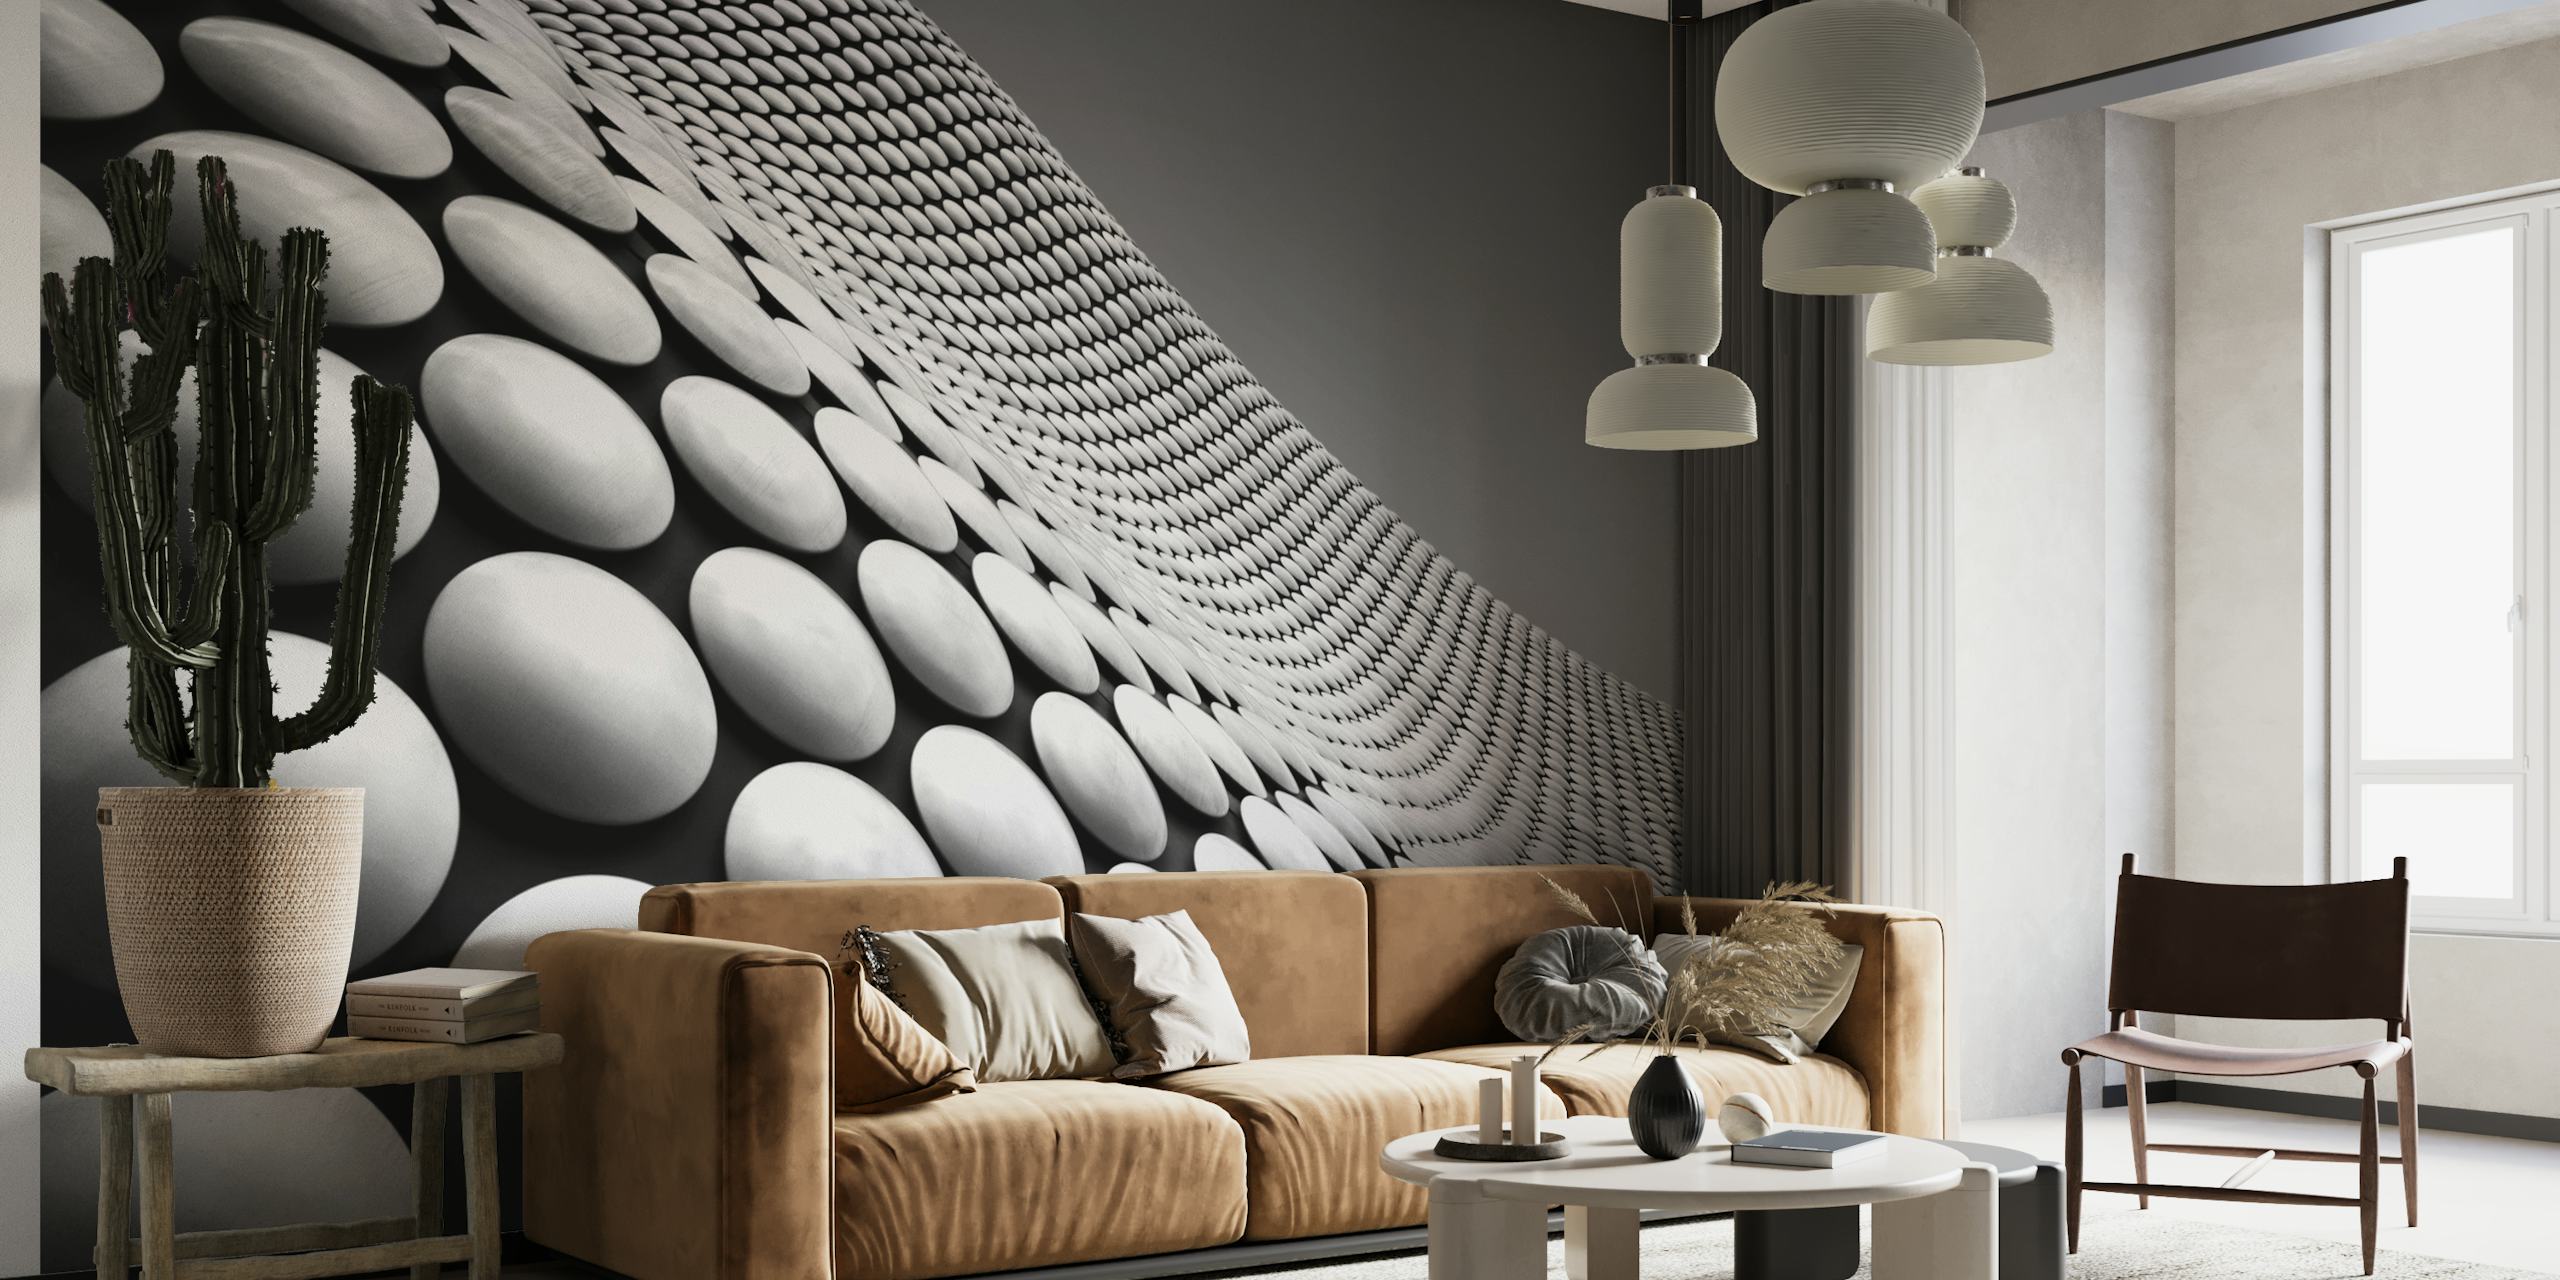 Abstract zwart-wit fotobehang met 3D gebogen patroonontwerp van happywall.com